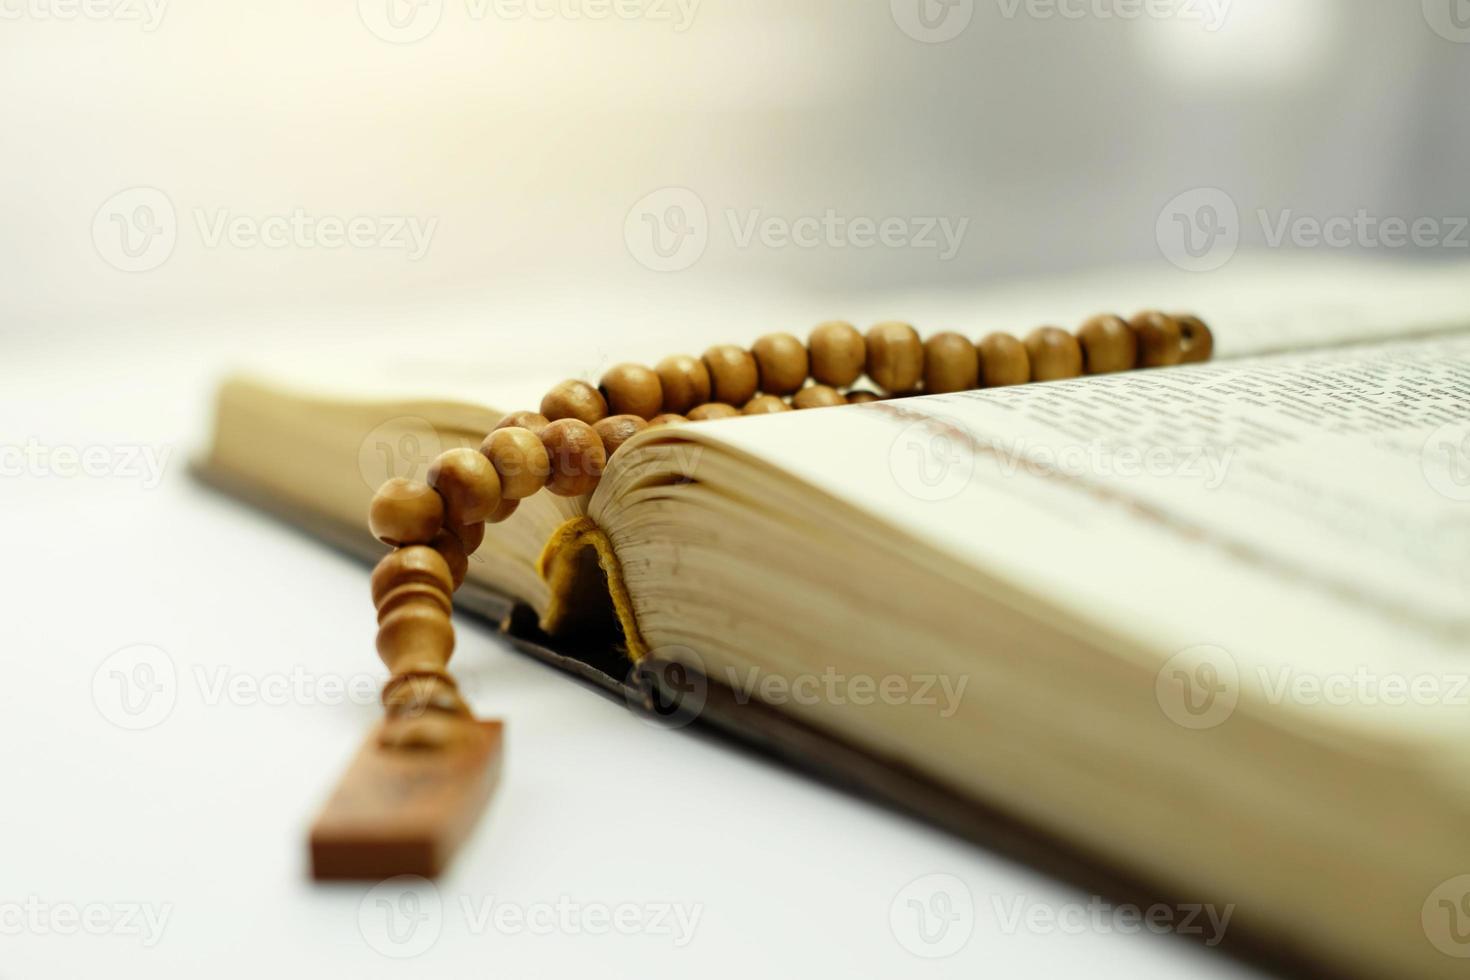 islamitische tasbih op koran, het heilige boek van moslims, moslims zullen meer van dit heilige boek lezen tijdens de ramadan. ramadan concept foto